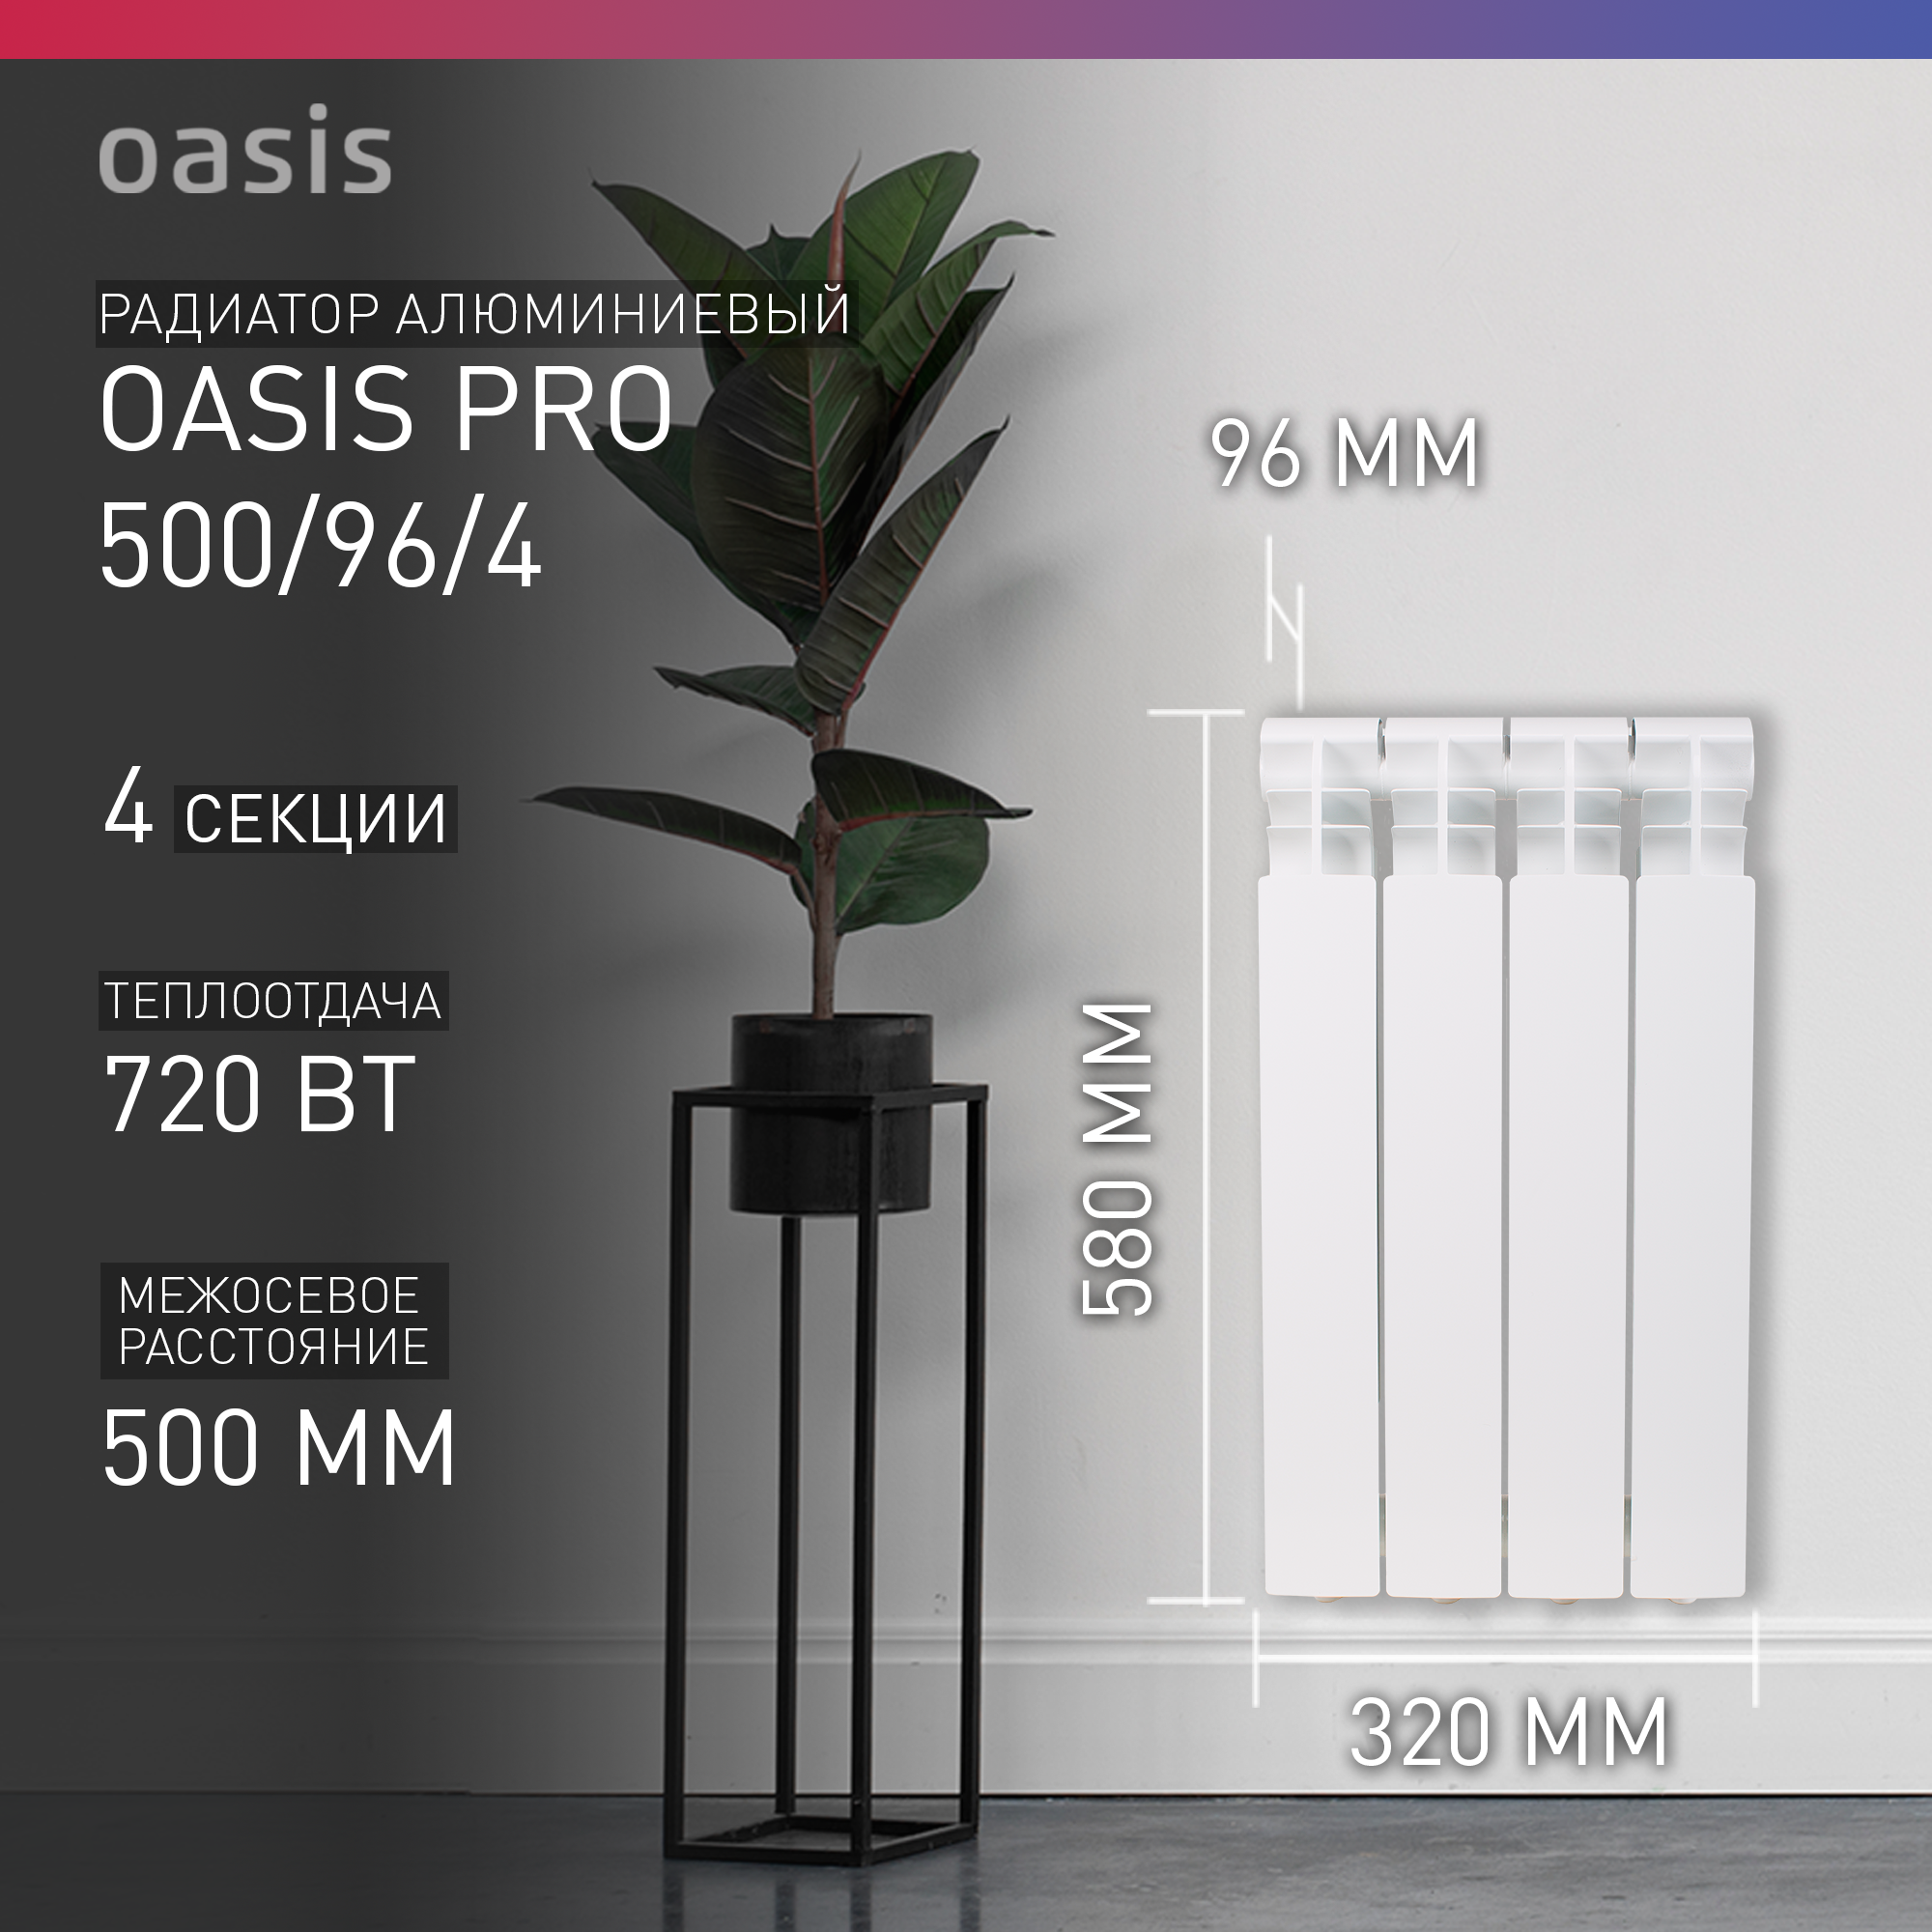 Радиатор алюминиевый Oasis Pro 500/96